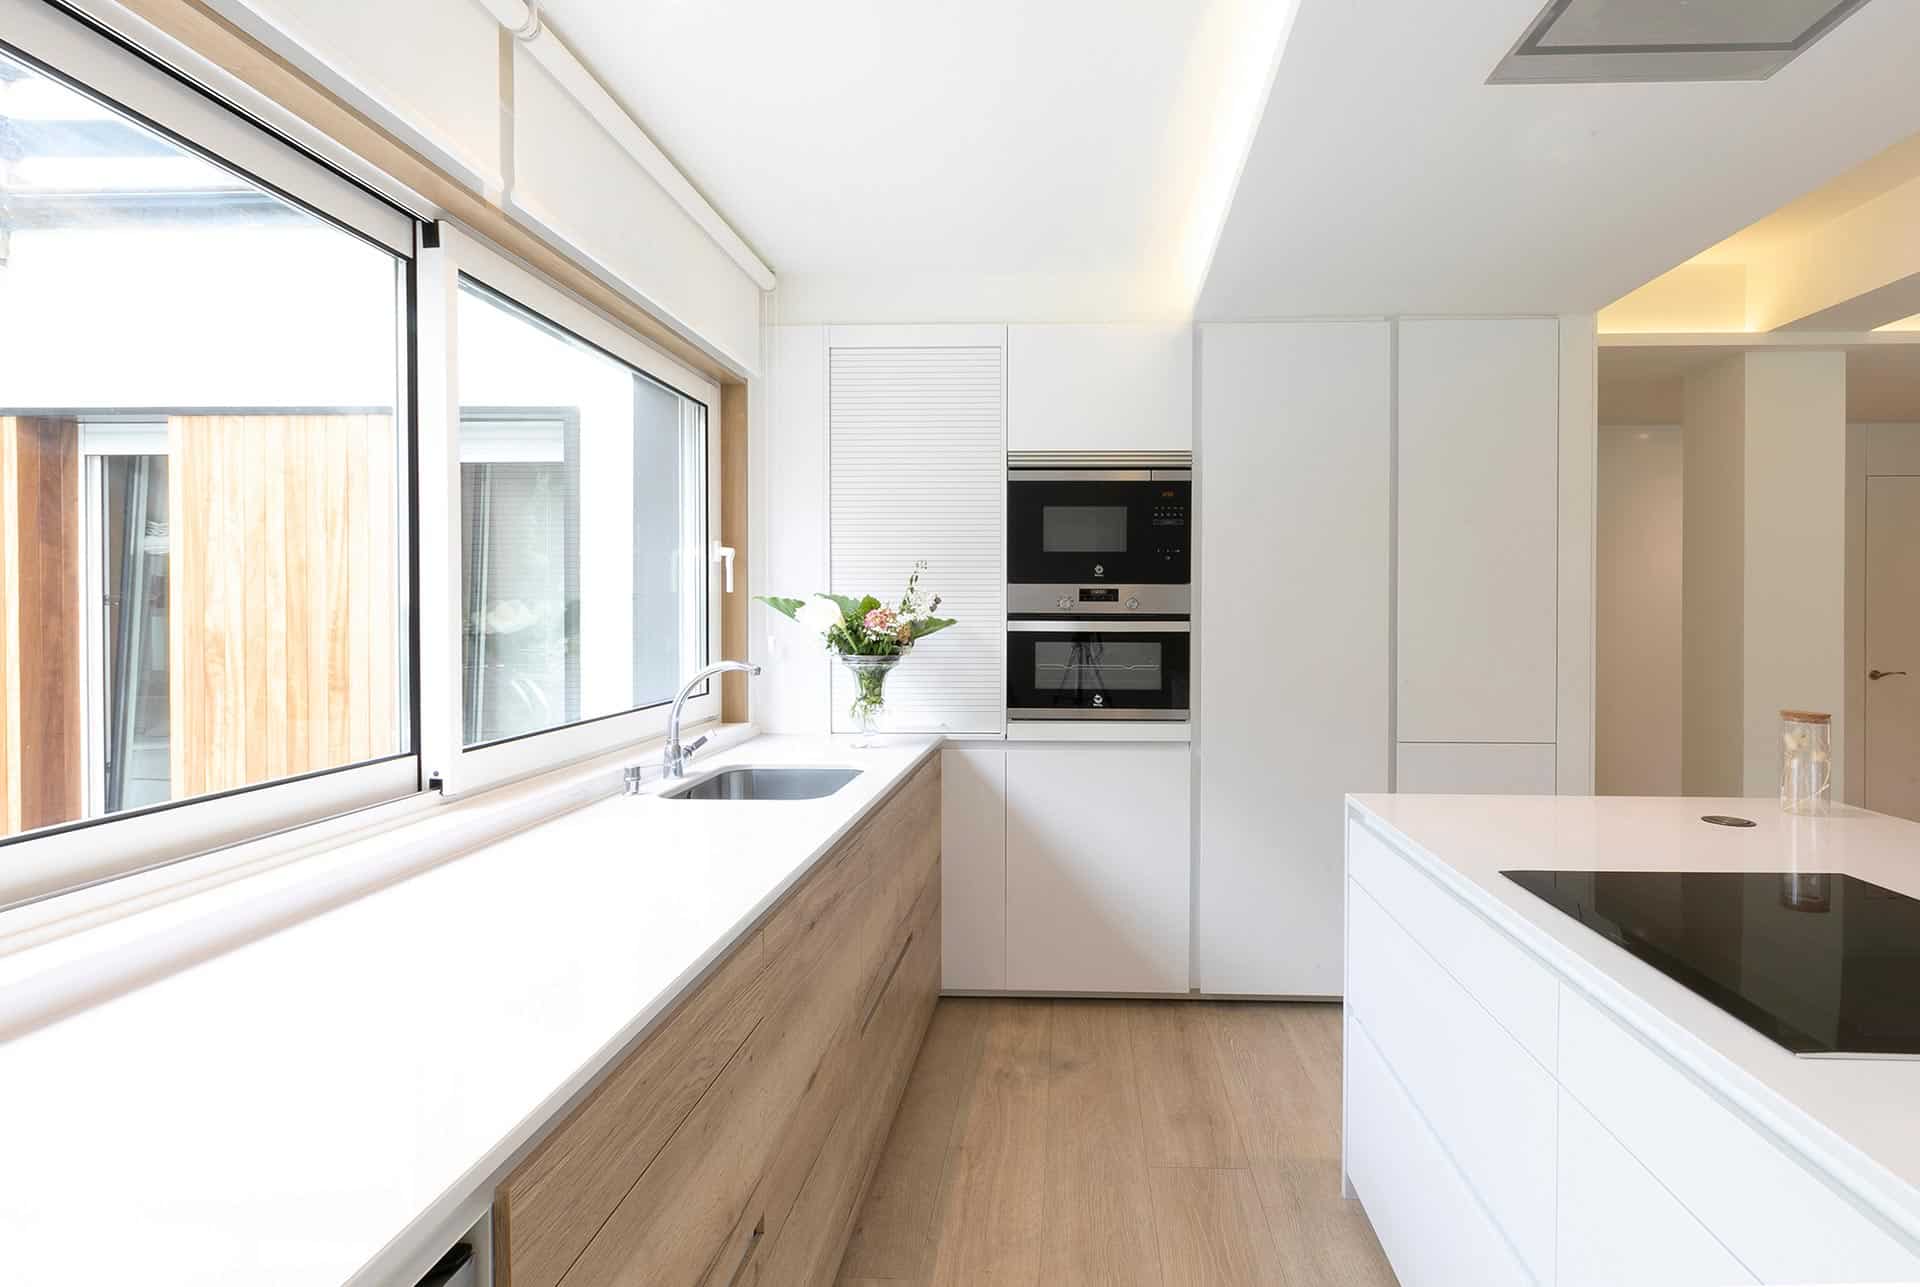 Cocina abierta al salón en reforma de vivienda con interiorismo diseñada por Moah Arquitectos en Cantabria